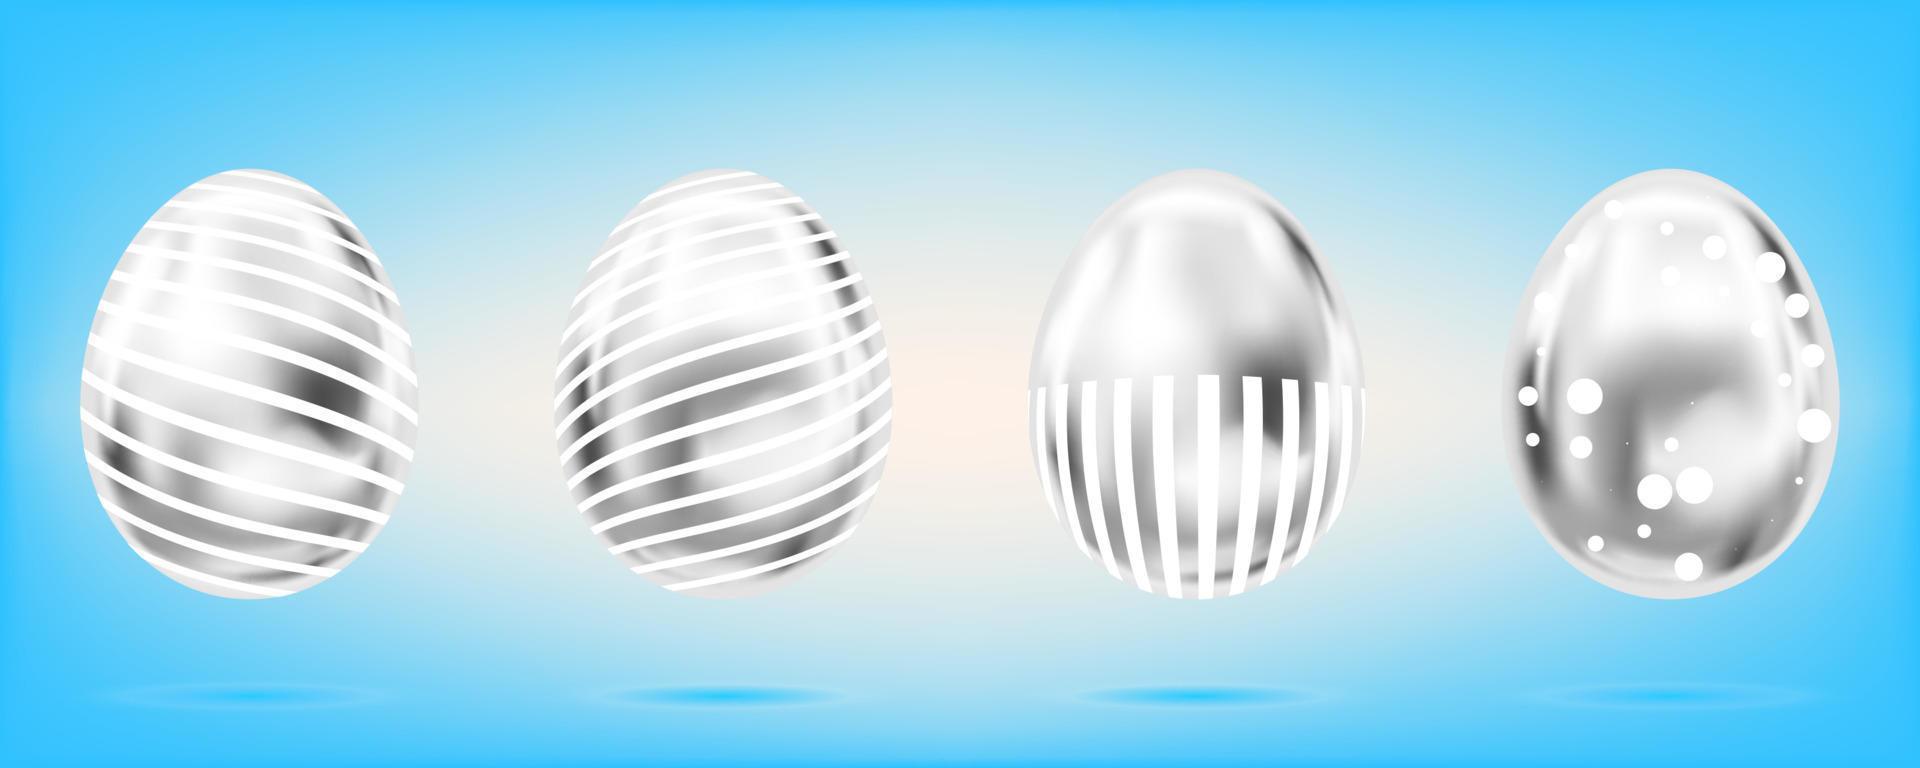 quattro uova d'argento sullo sfondo azzurro del cielo. oggetti isolati per la decorazione di pasqua. punti e strisce decorati vettore